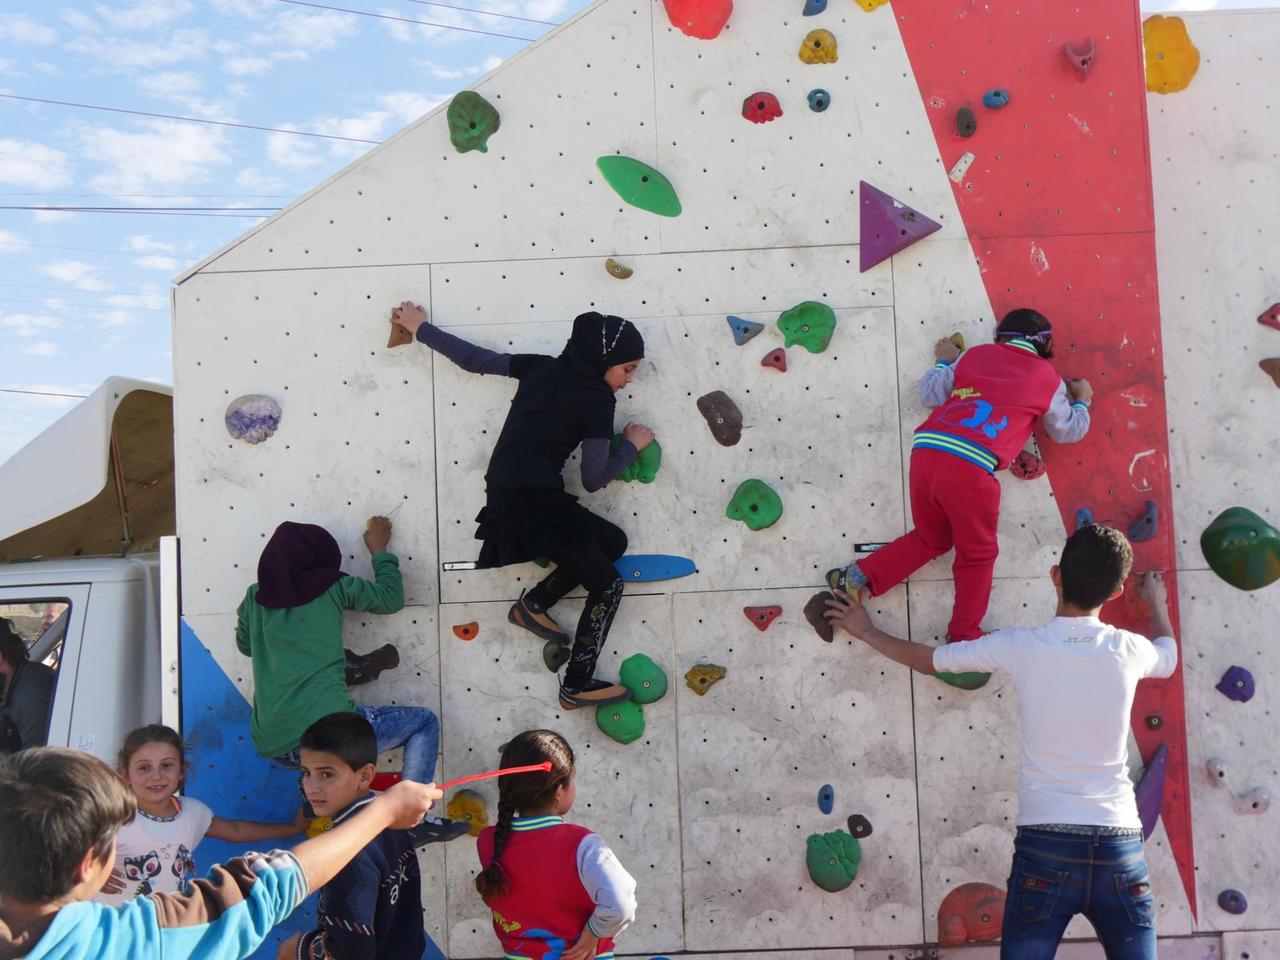 Kinder klettern im Flüchtlingscamp